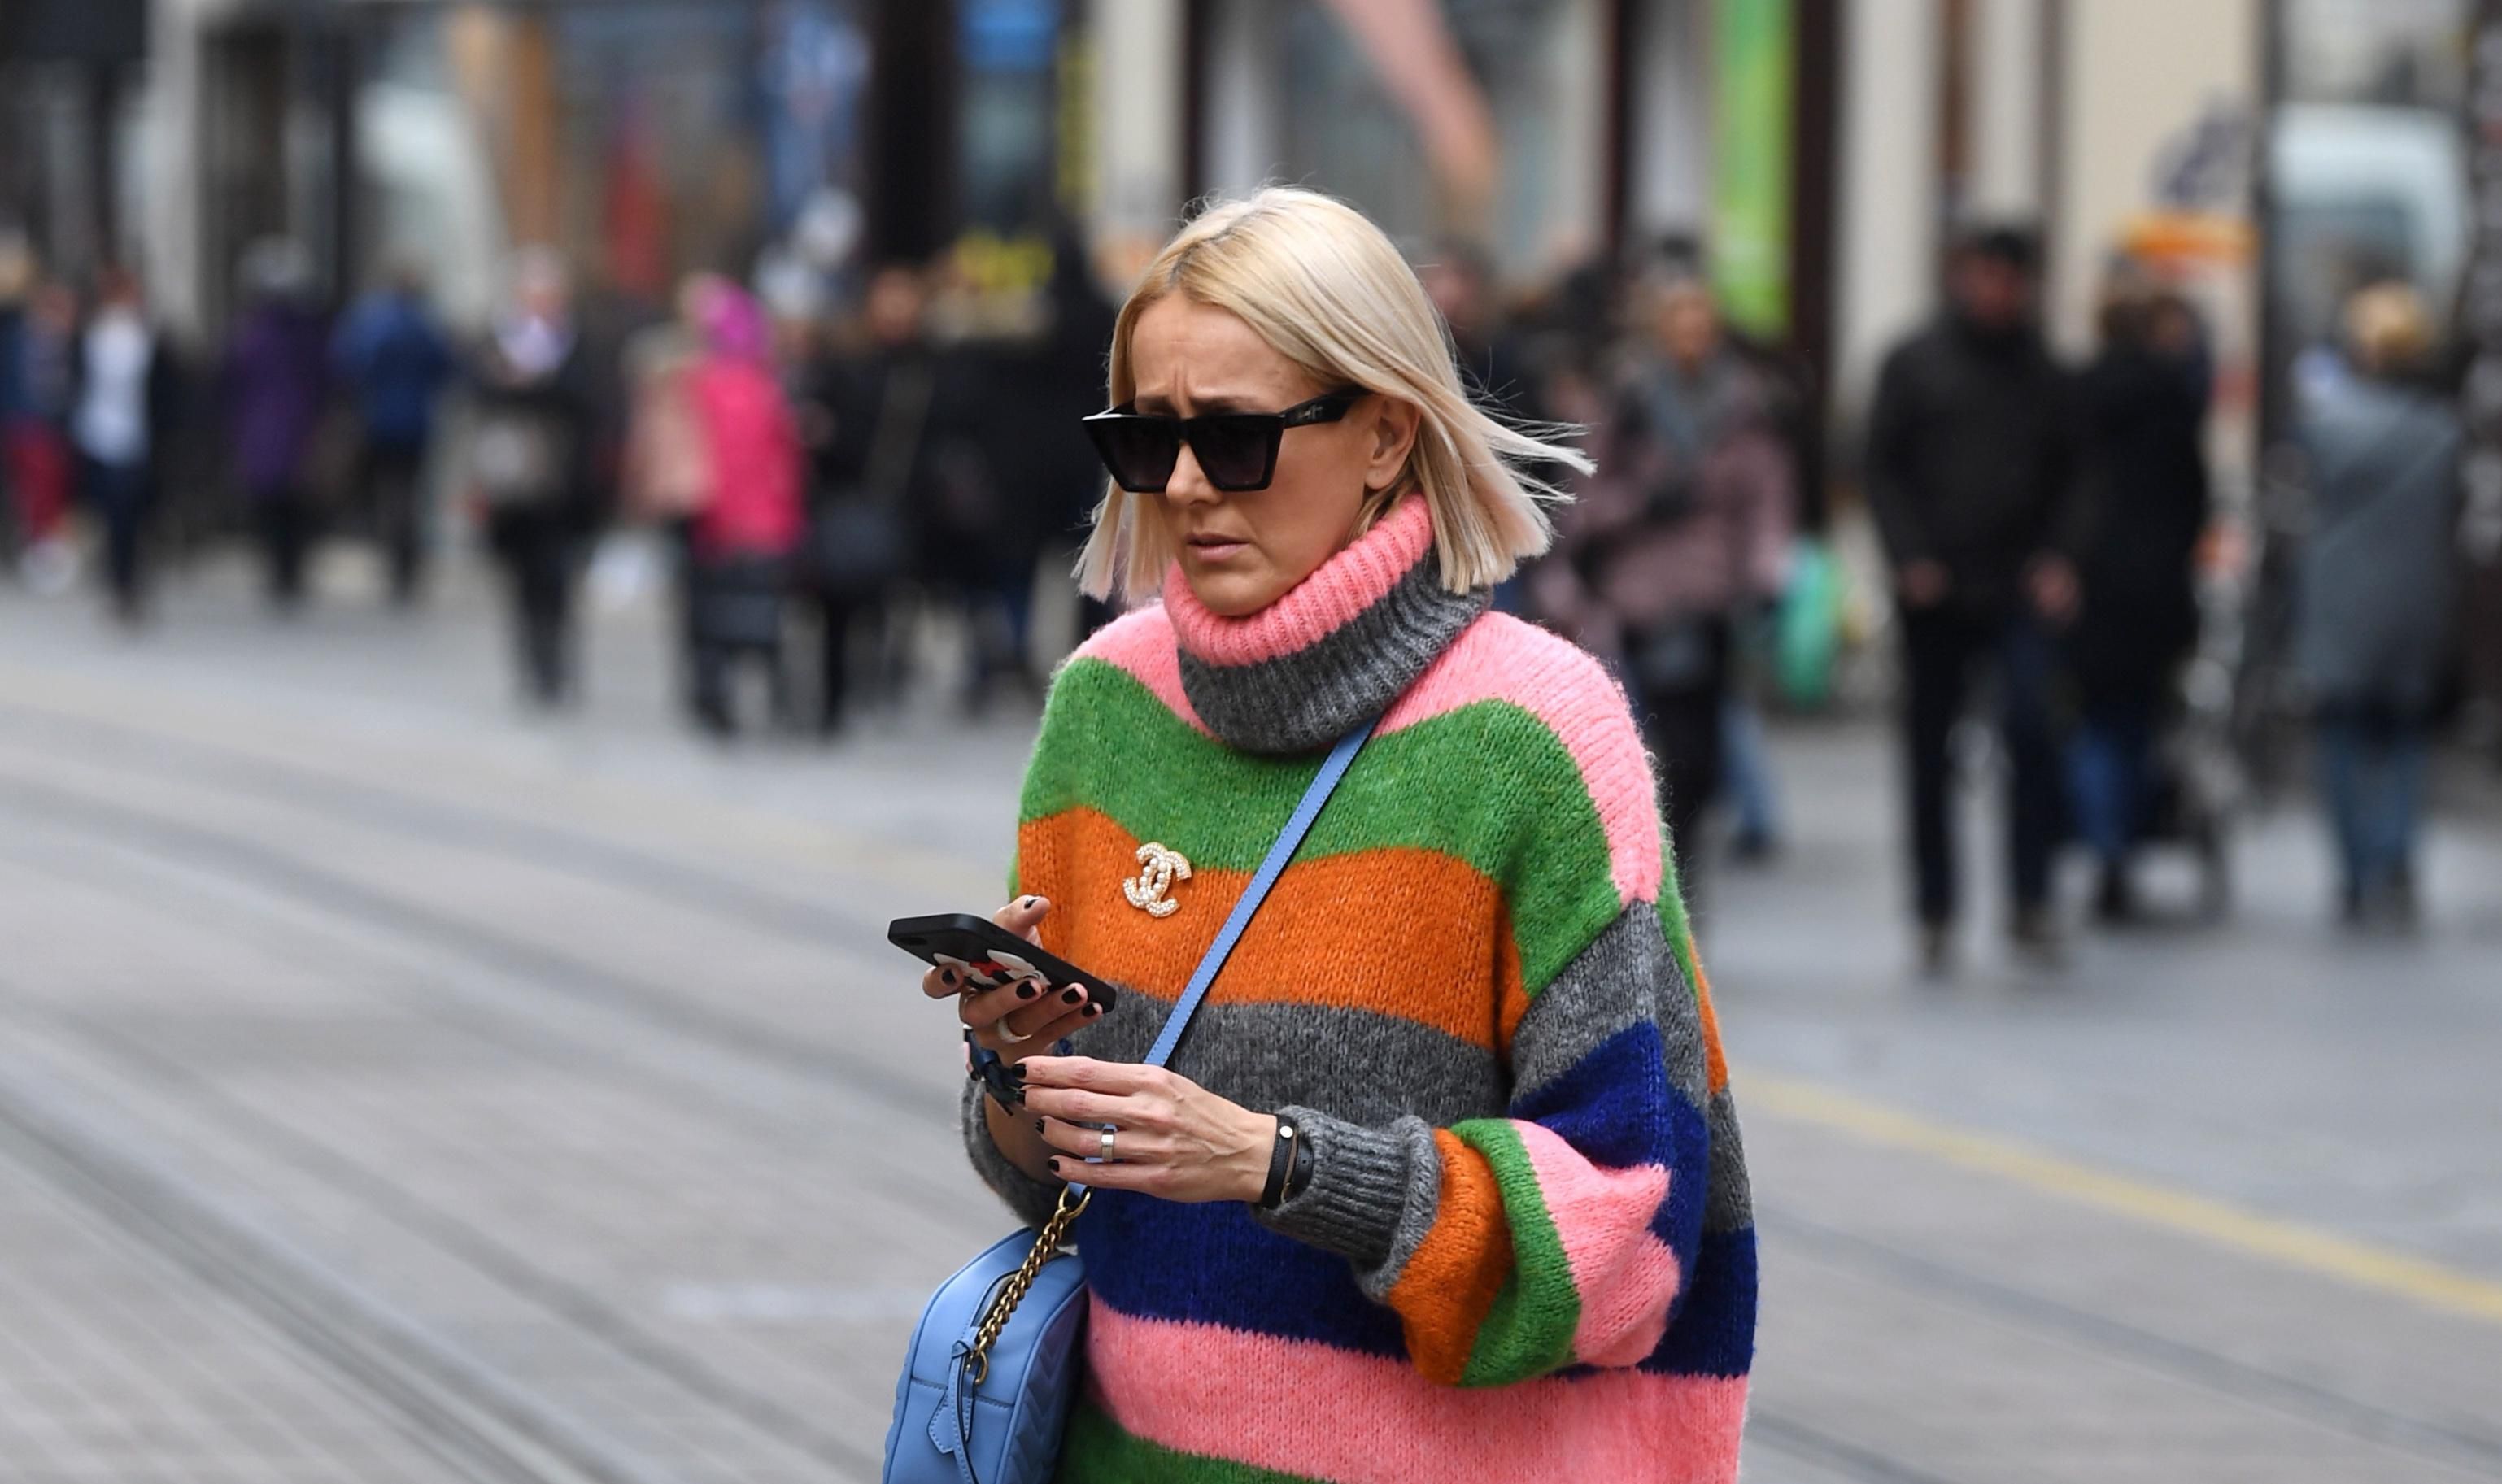 Outfit ove plavuše zaslužio je mjesto na najpopularnijim street style blogovima